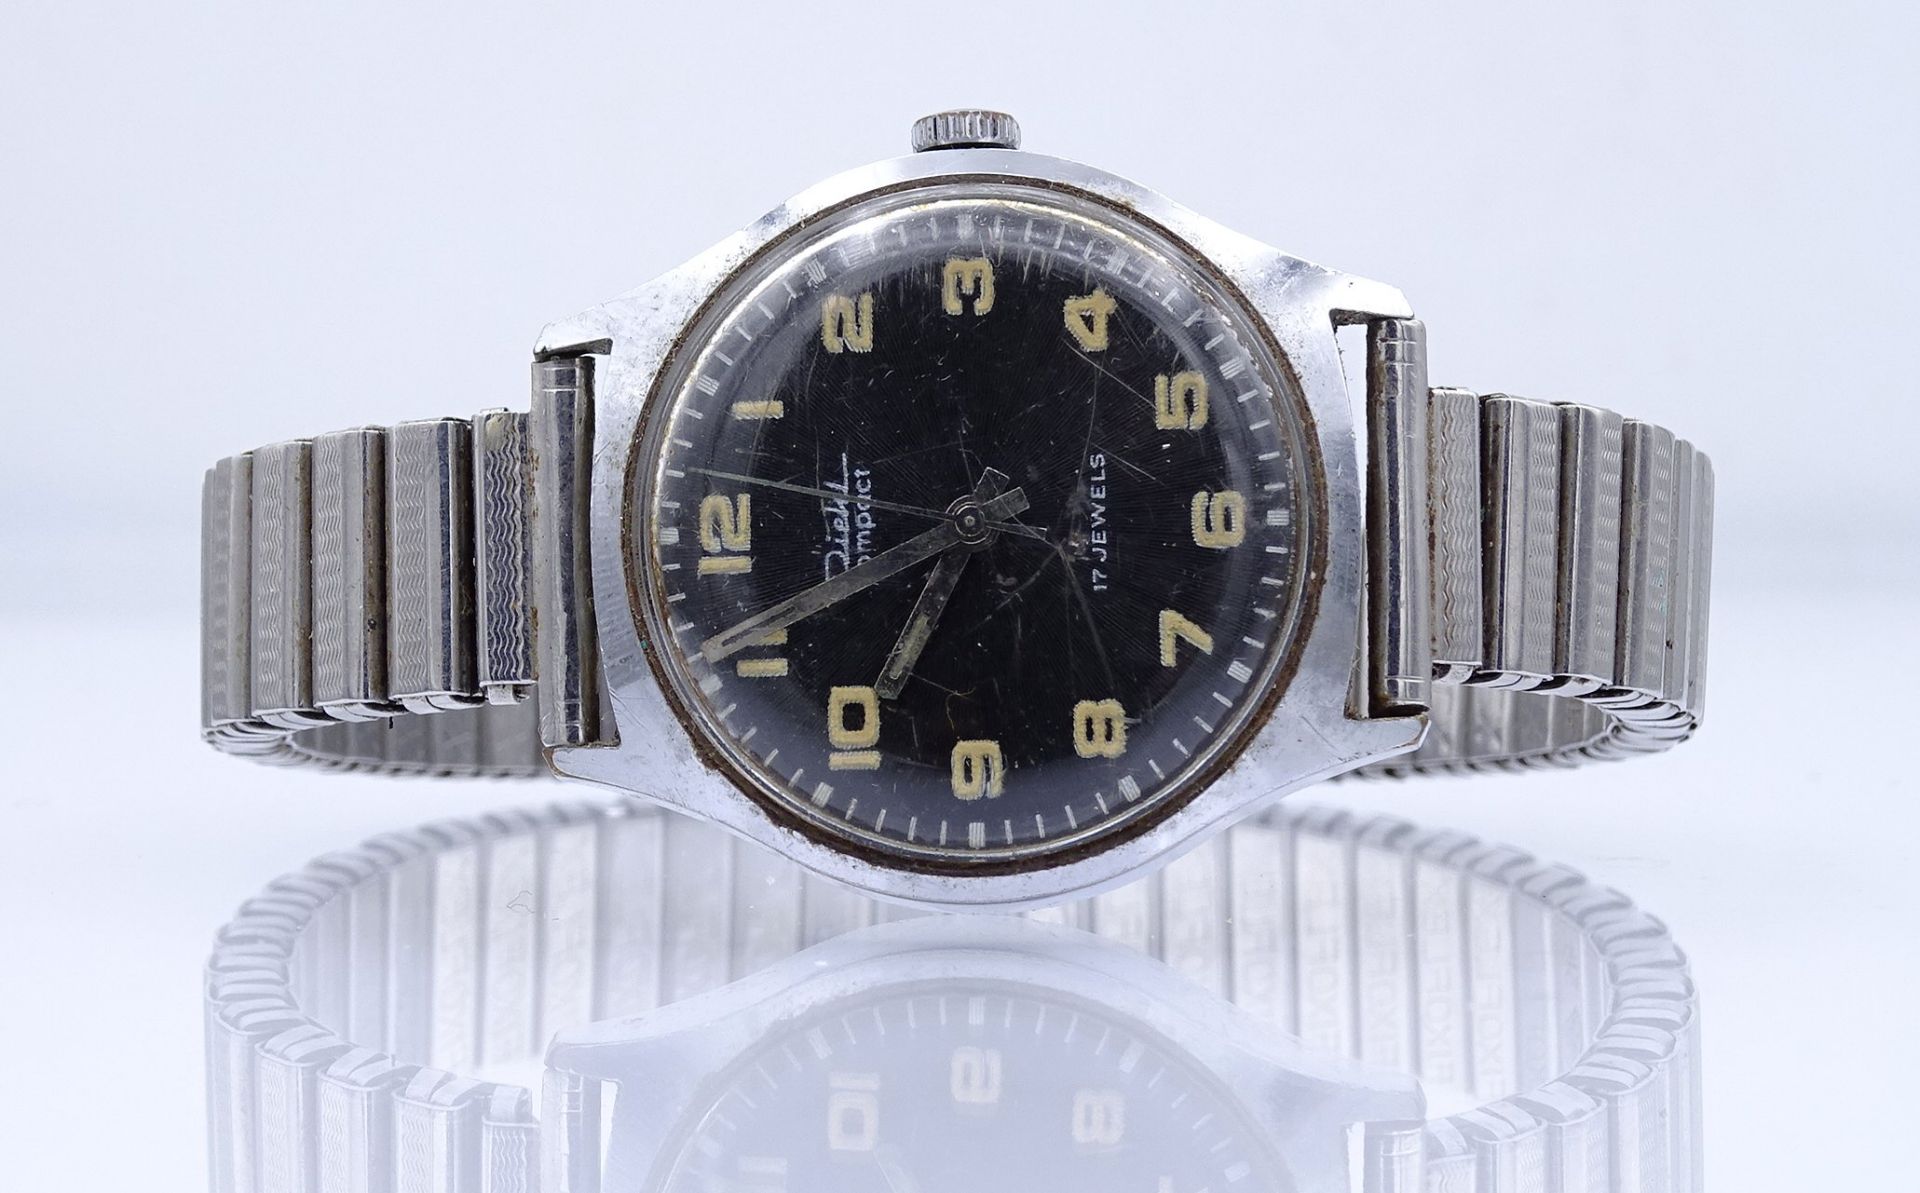 Herren Armbanduhr "Diehl", Compact, mechanisch, Werk läuft nur kurz an, D. 33mm, Alters- und Gebrau